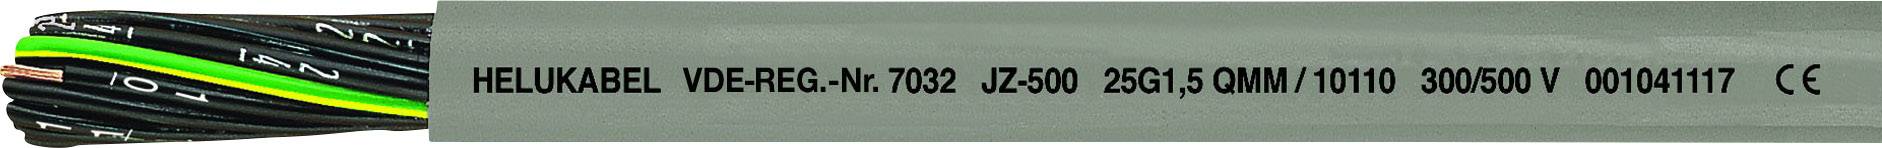 Vde reg. Кабель JZ-500 3g2,5 QMM. VDE-reg 7032. JZ-500 5g0.75.